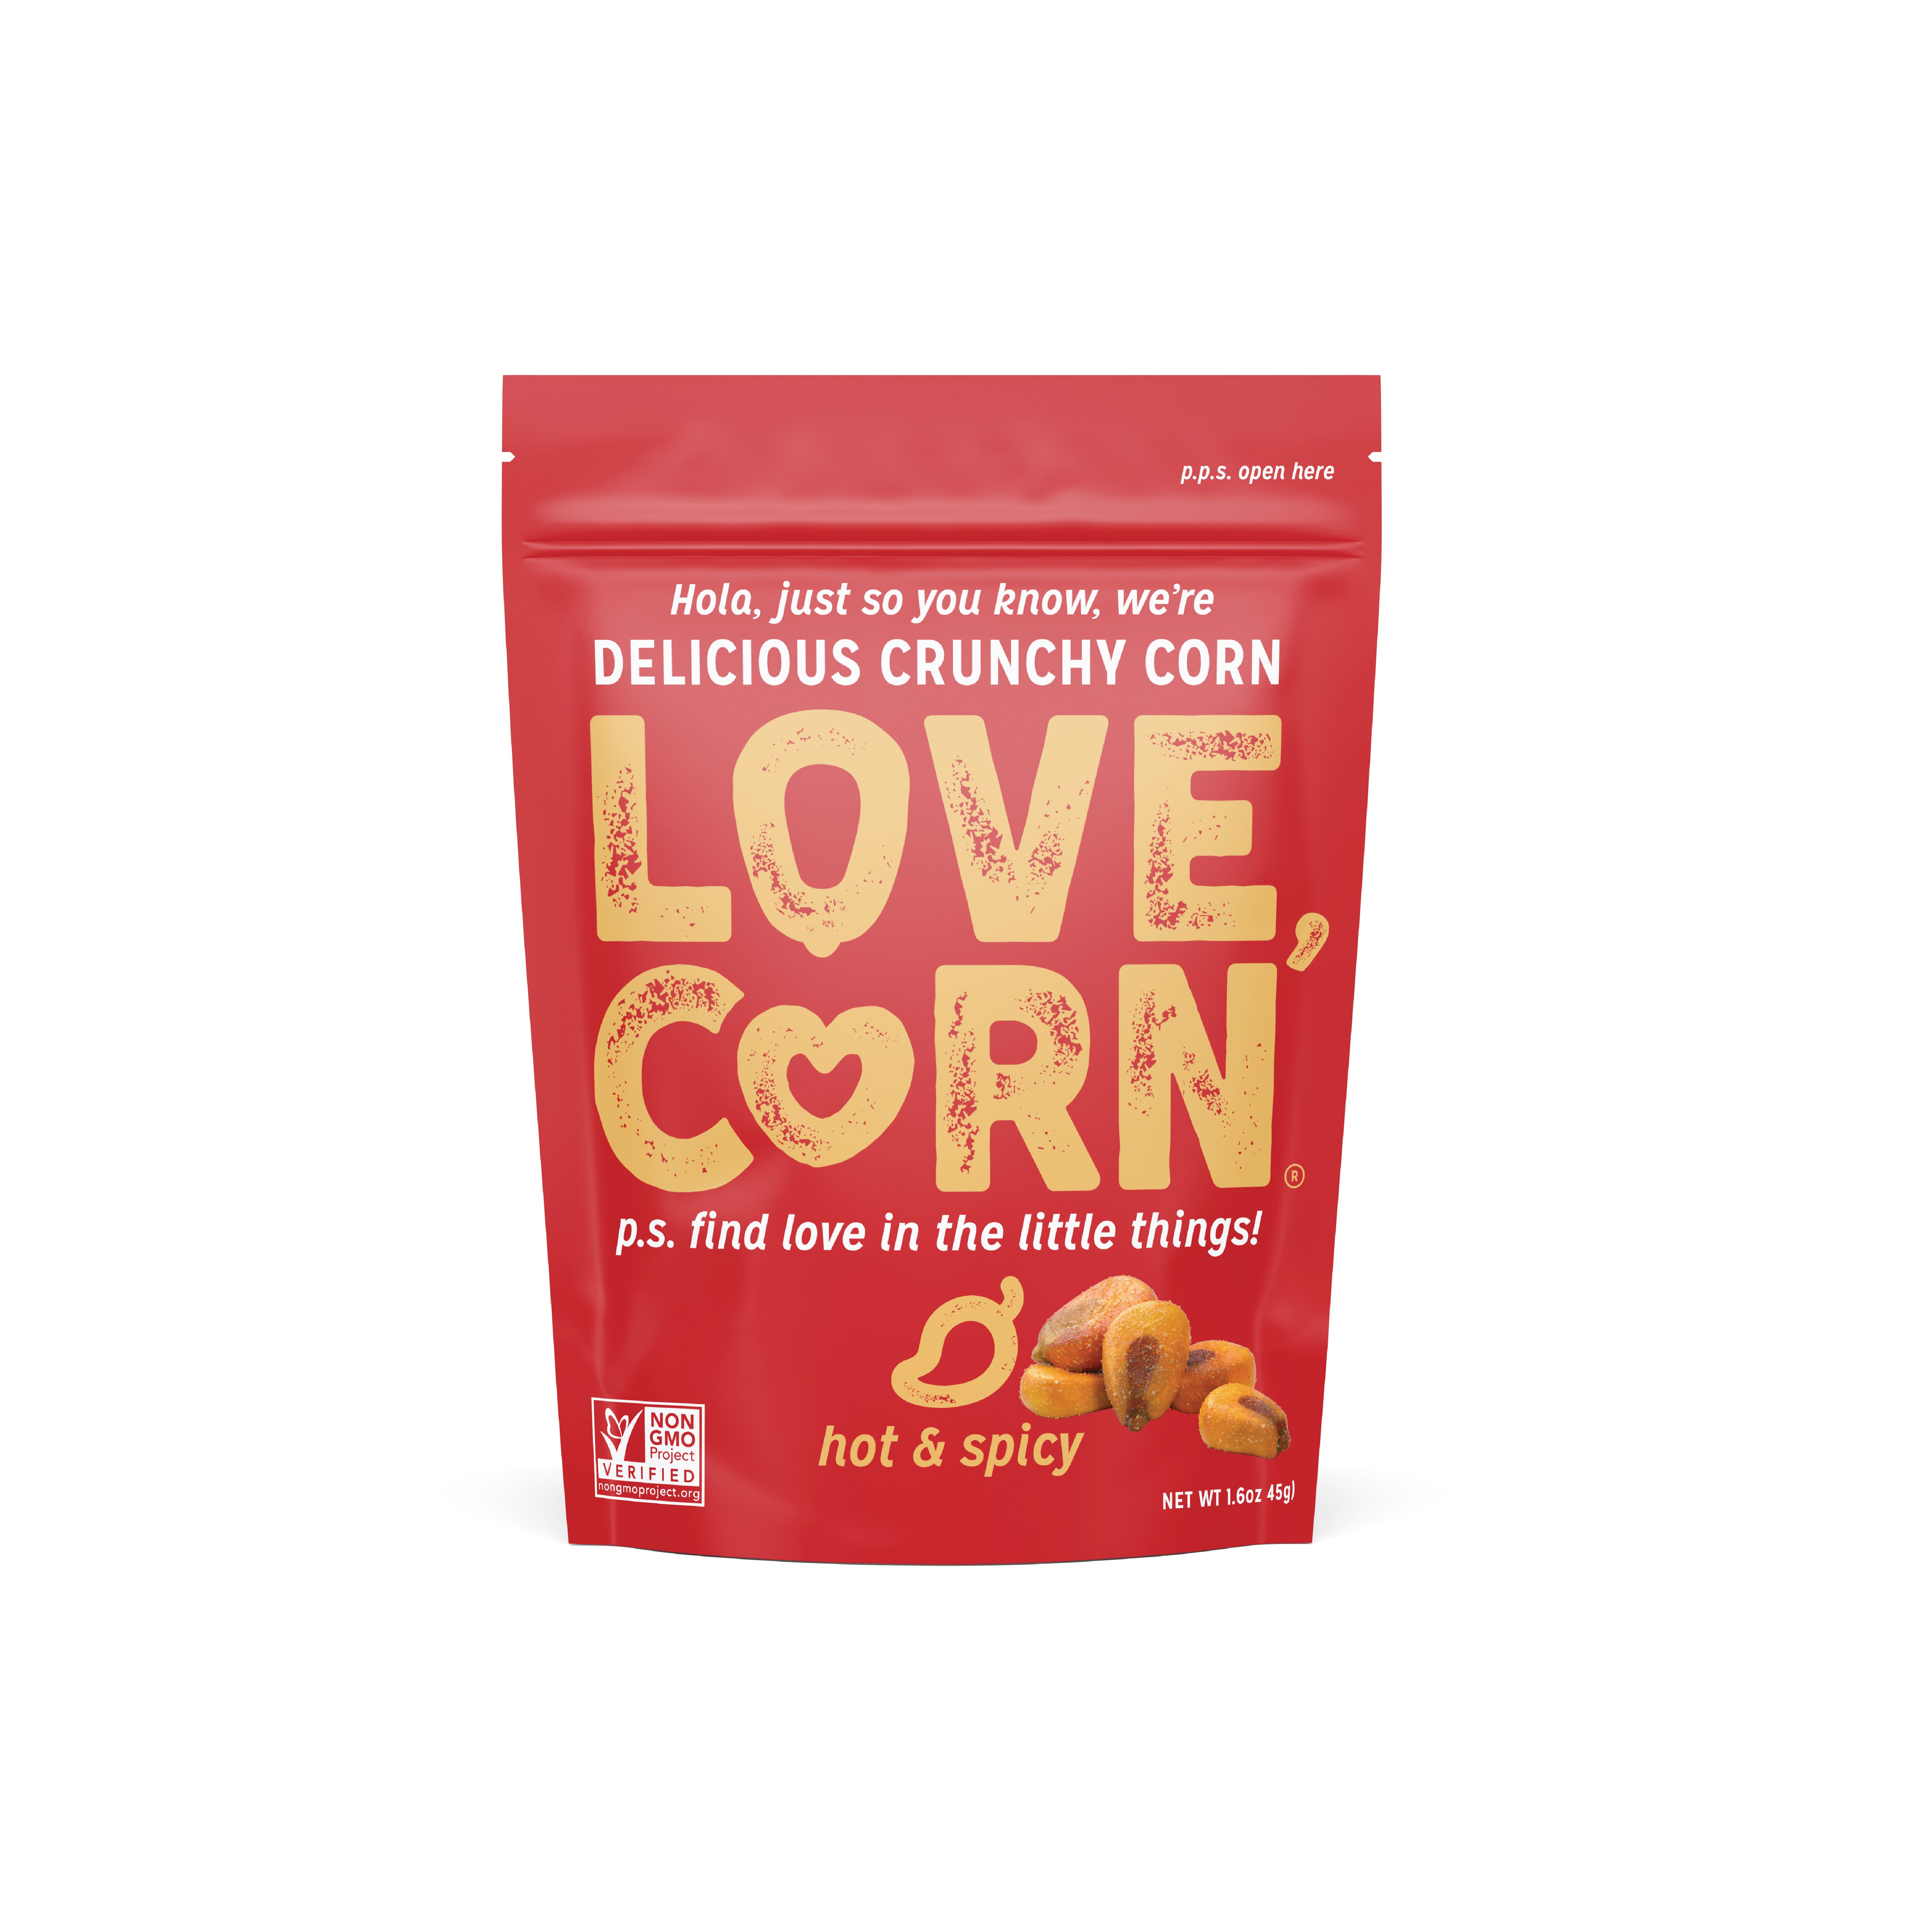 Love Corn Hot & Spicy Delicious Crunchy Corn, 1.6 oz